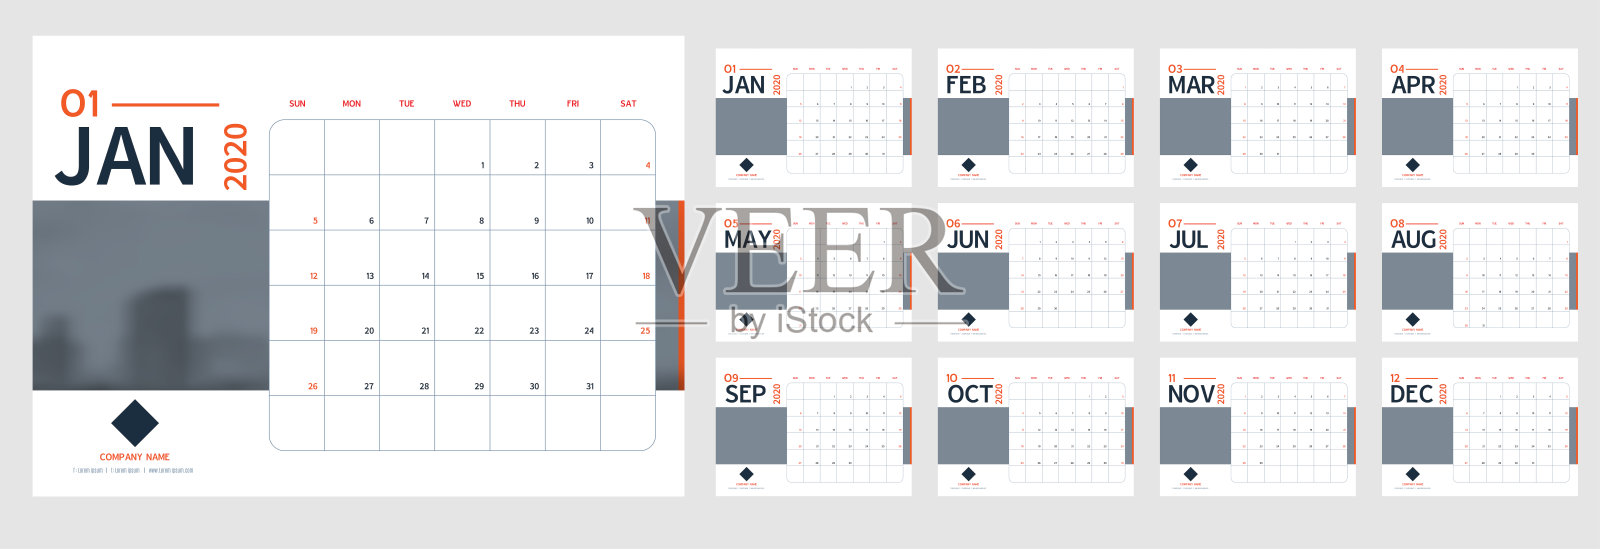 矢量2020年新年日历计划模板在最小表简单的风格蓝色和灰色，橙色，节日活动计划，周开始周日。12个月布局年度日历。时间表的日记。设计模板素材